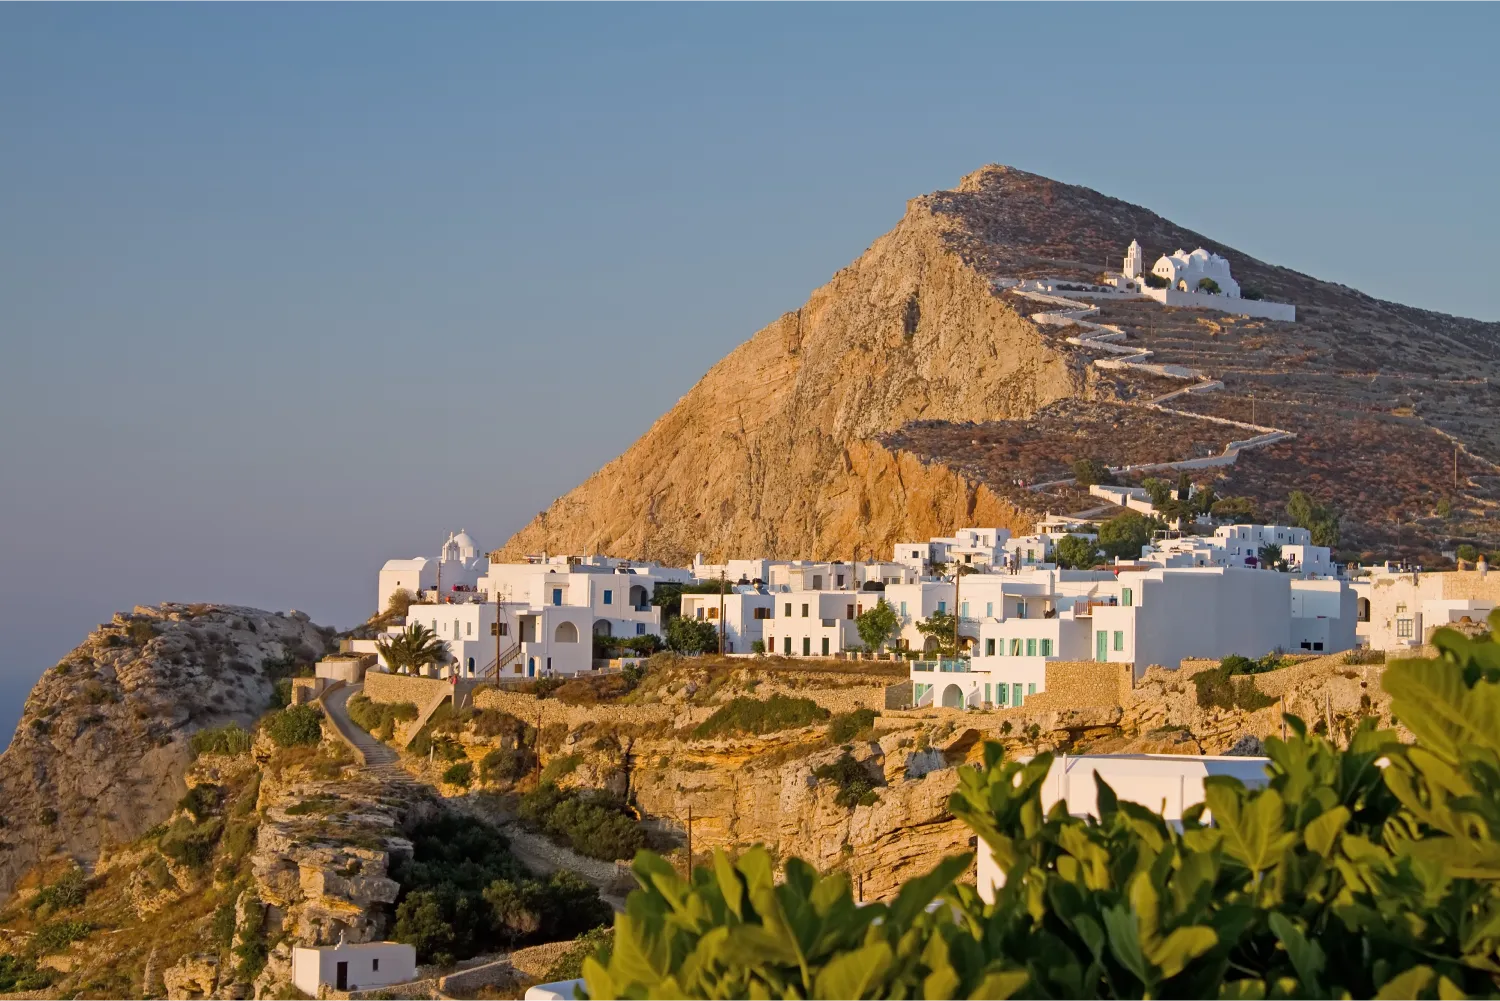 La ville pittoresque de Chora à Folegandros et l'église de la Vierge Marie qui la surplombe